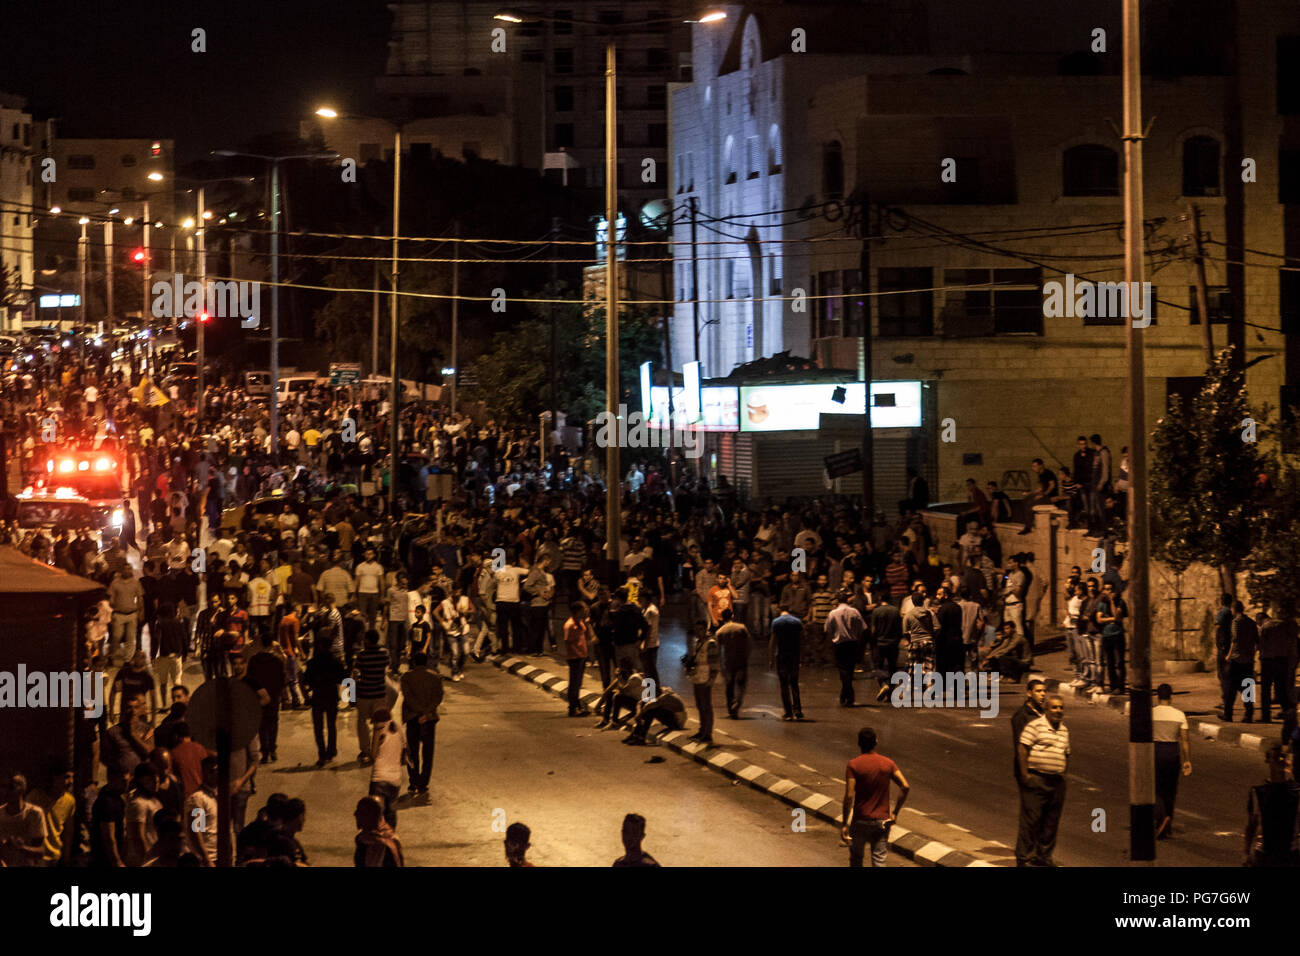 Belén, Palestina, 23 de julio de 2014: multitudes de manifestantes palestinos en la calle delante del muro de separación en Belén durante disturbios en la noche Foto de stock